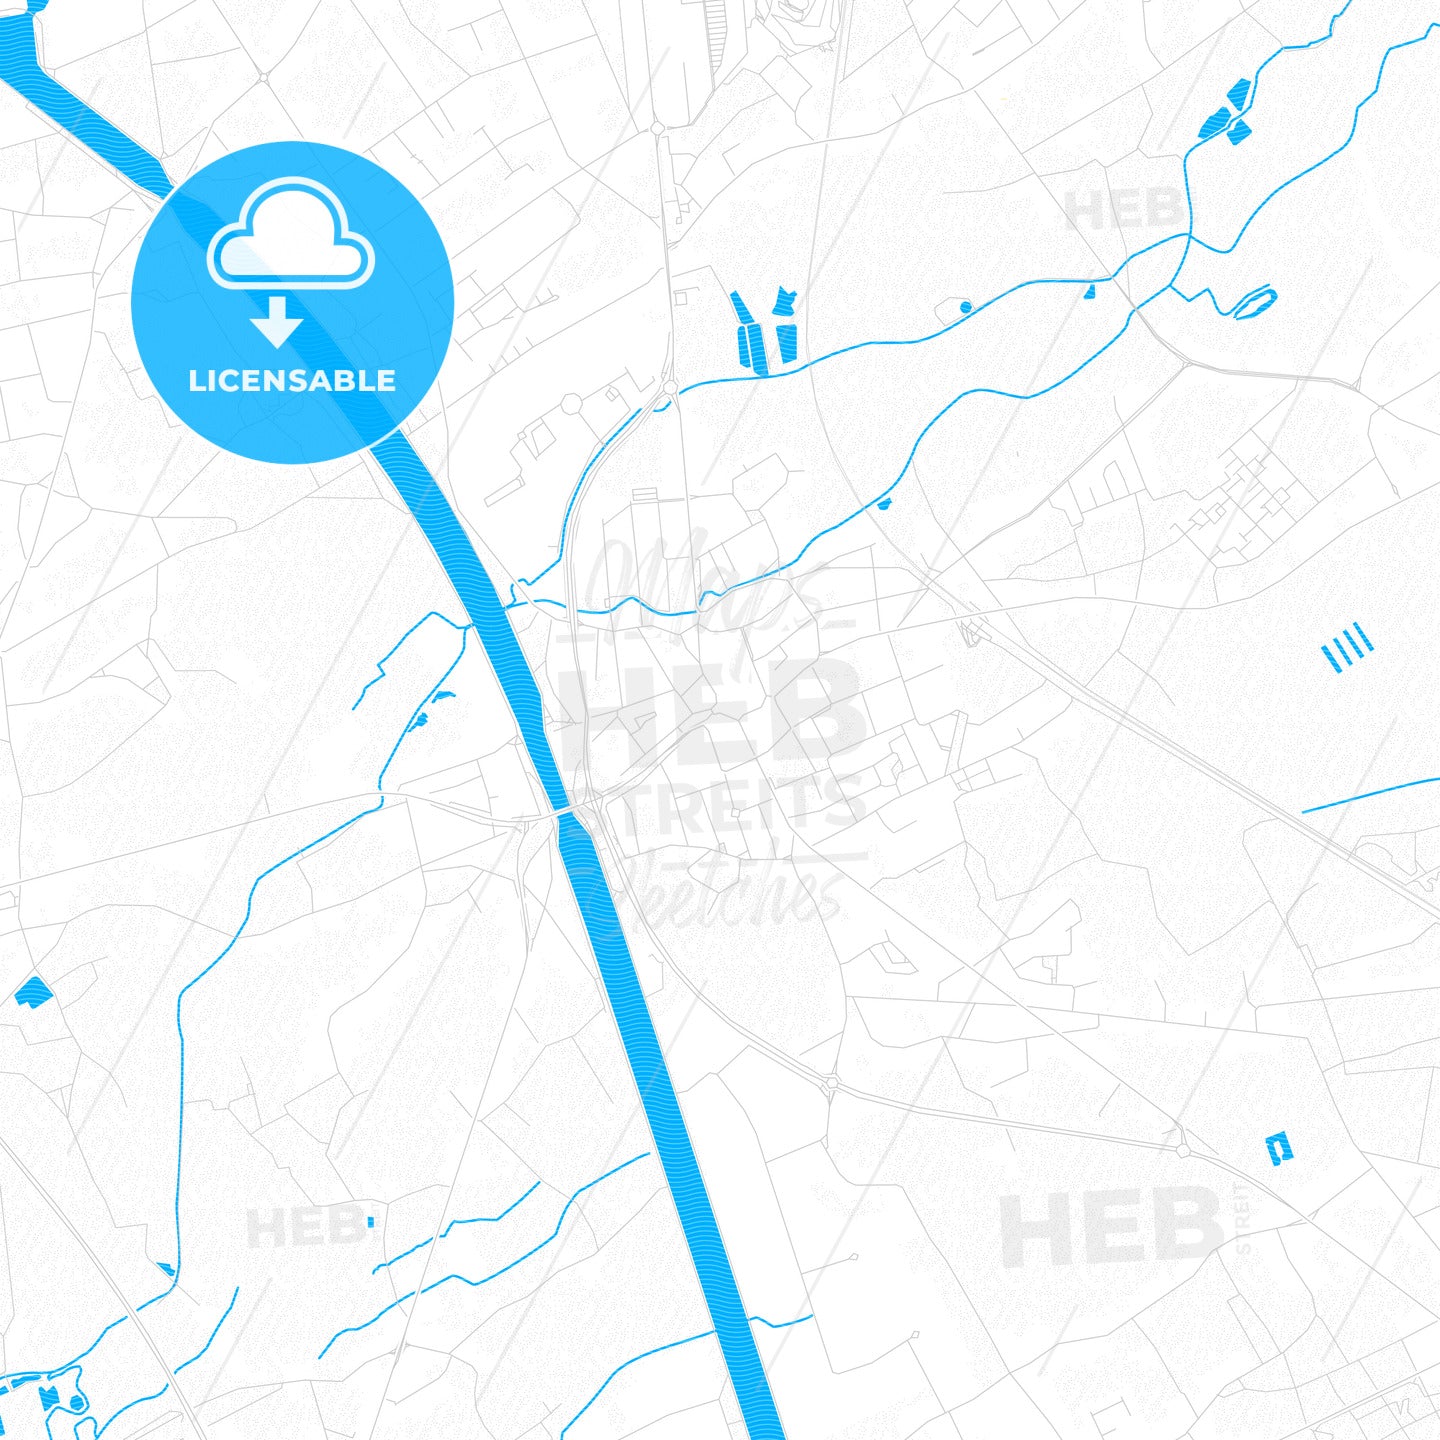 Beringen, Belgium PDF vector map with water in focus